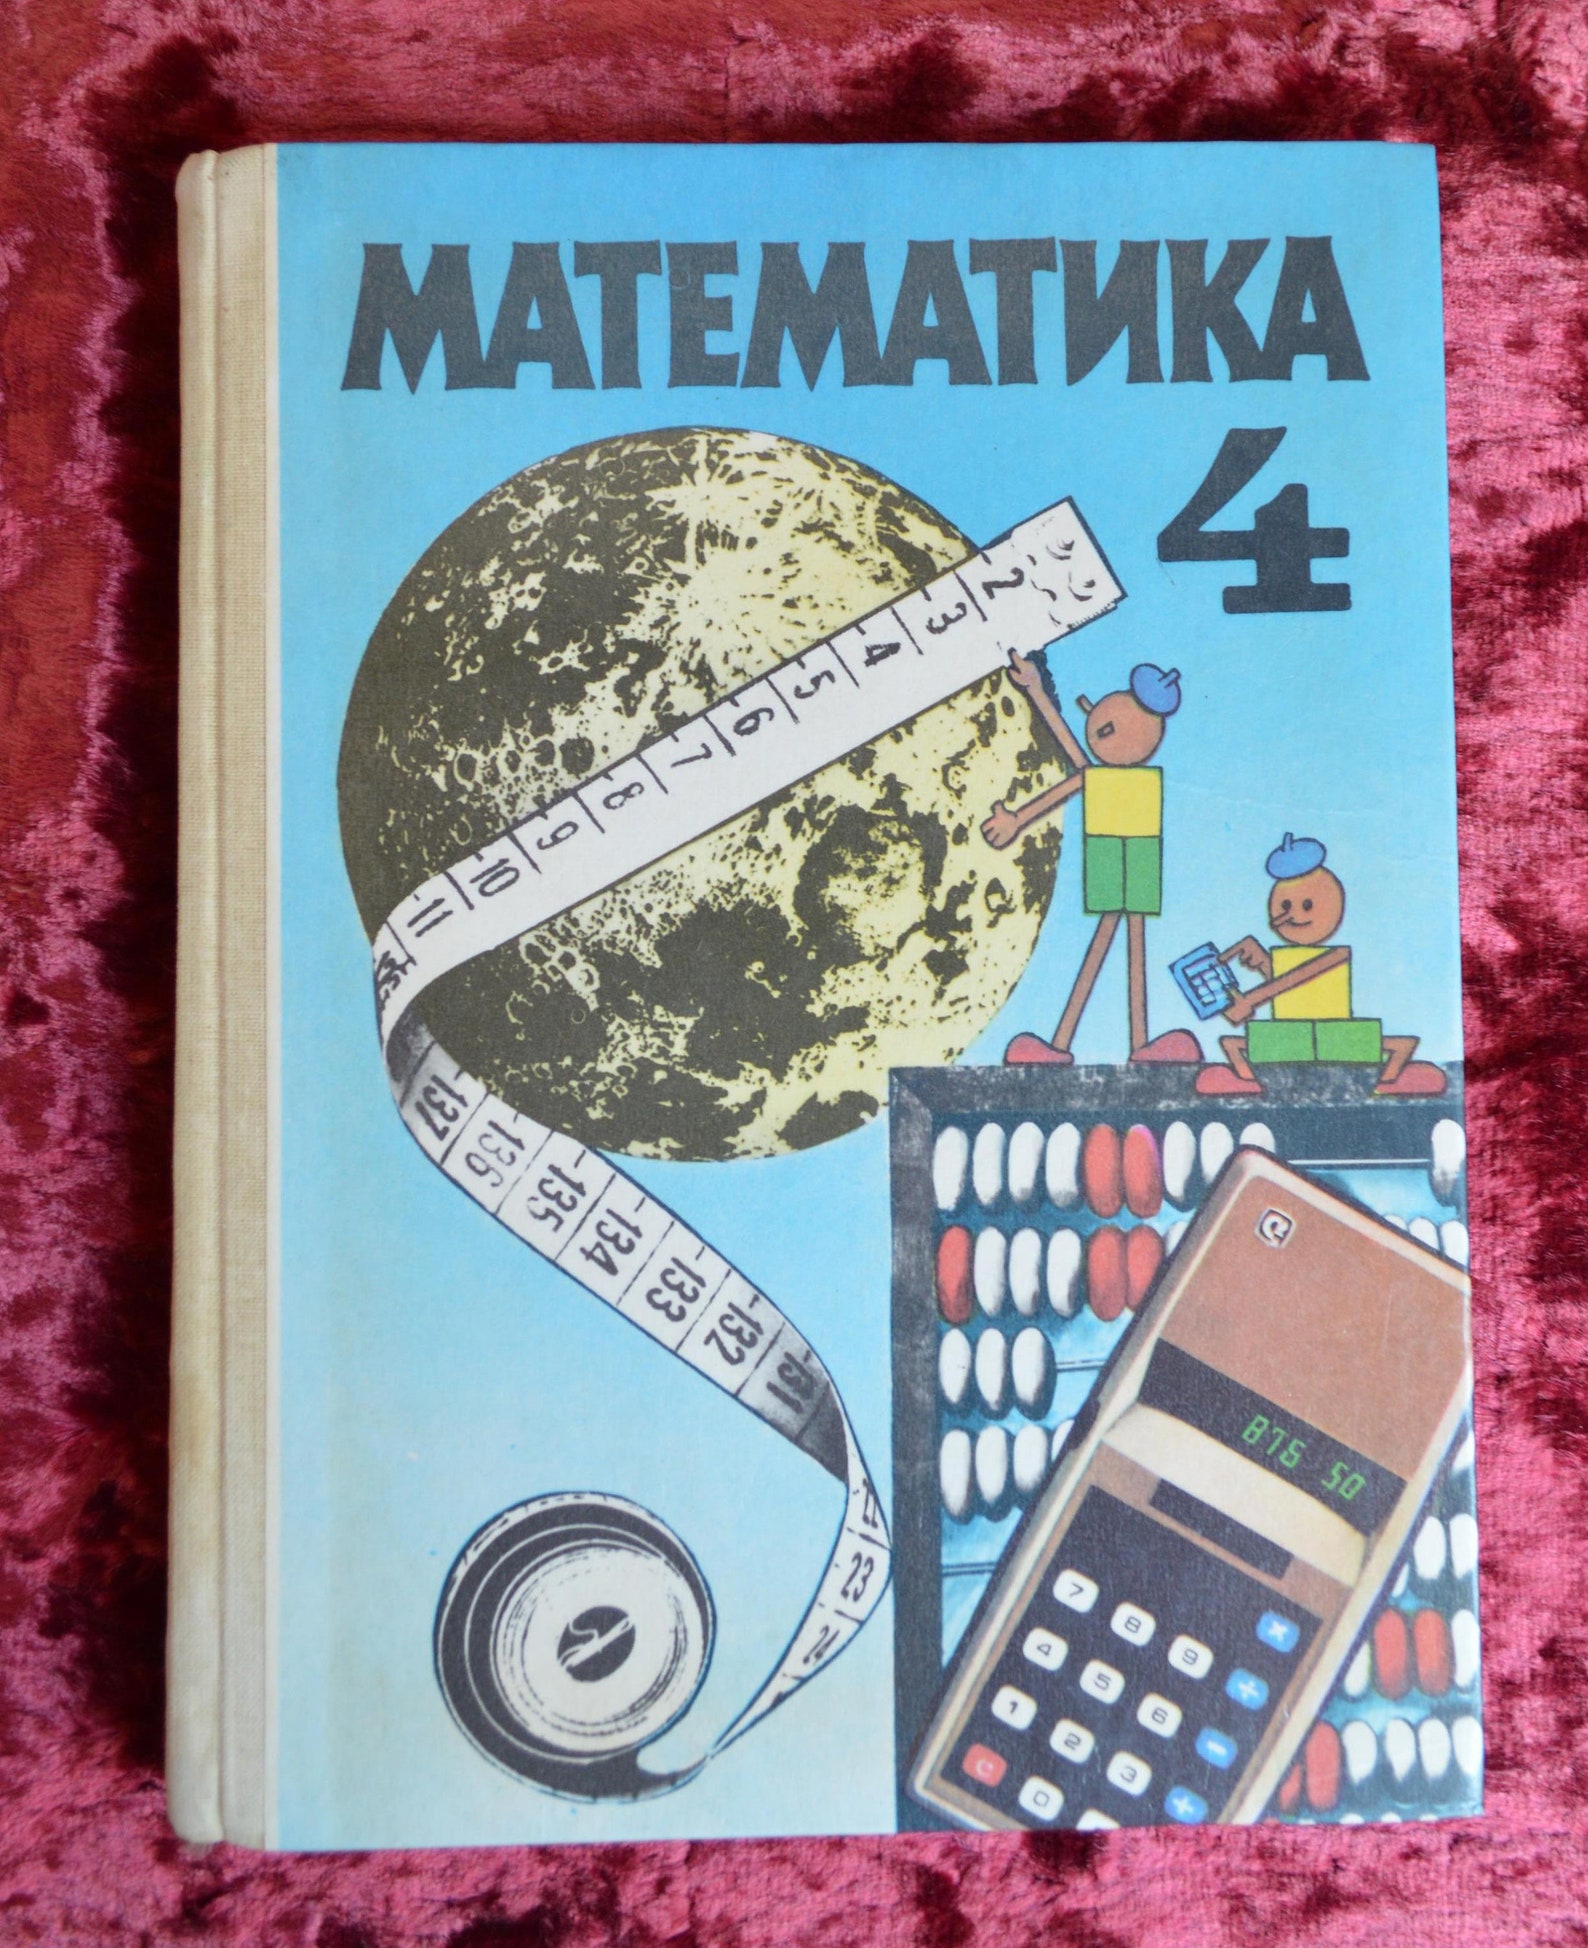 Математика 1990. Учебник математики СССР. Учебник по математике 1990 года. Учебник математике 4 класс 1990 года. Математика 4 класс СССР учебник.